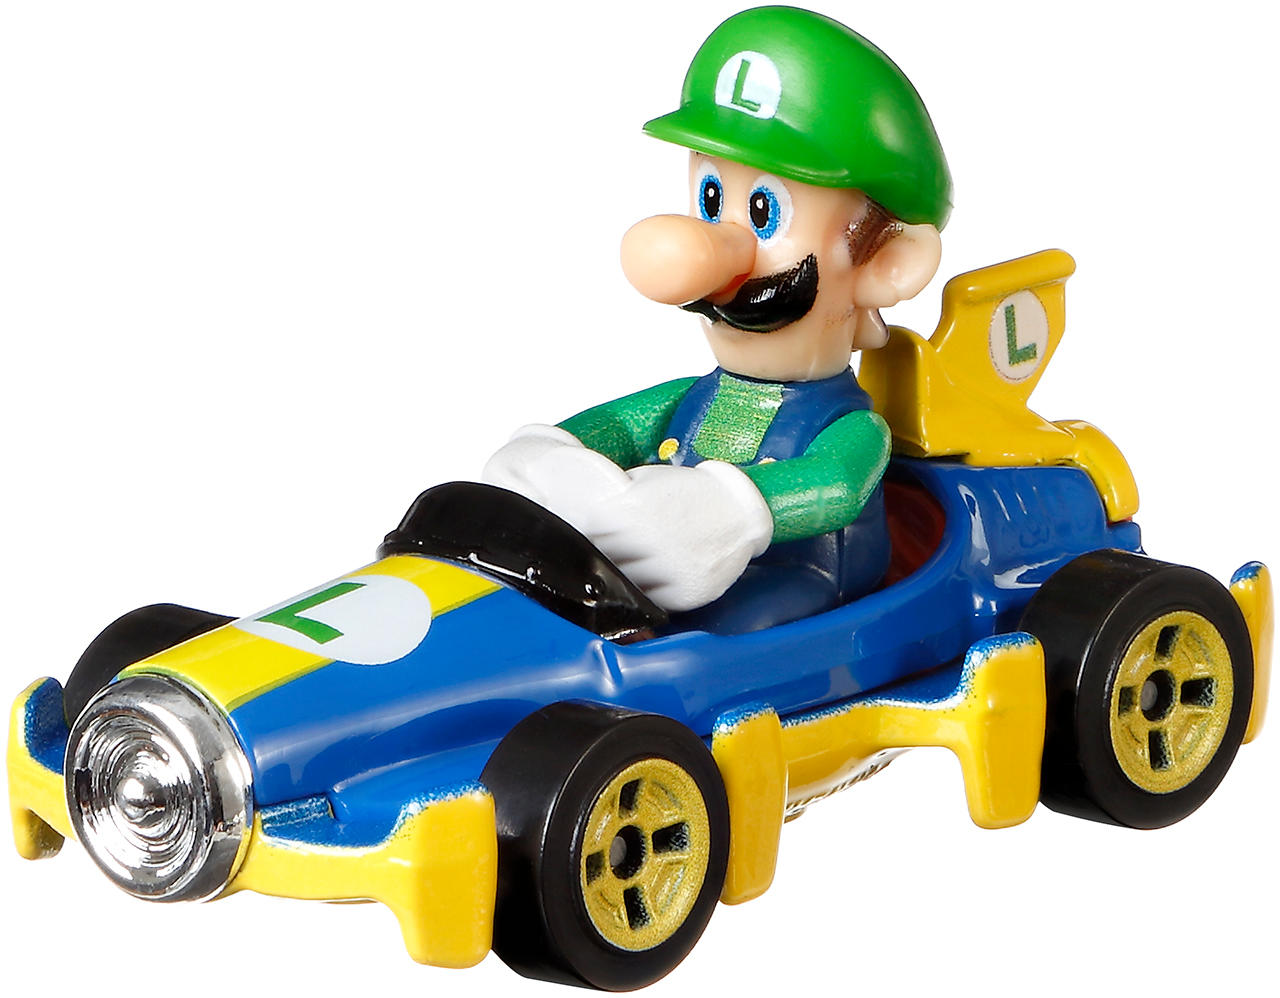 Hot Wheels Mario Kart les voiturettes et circuits du monde de Mario